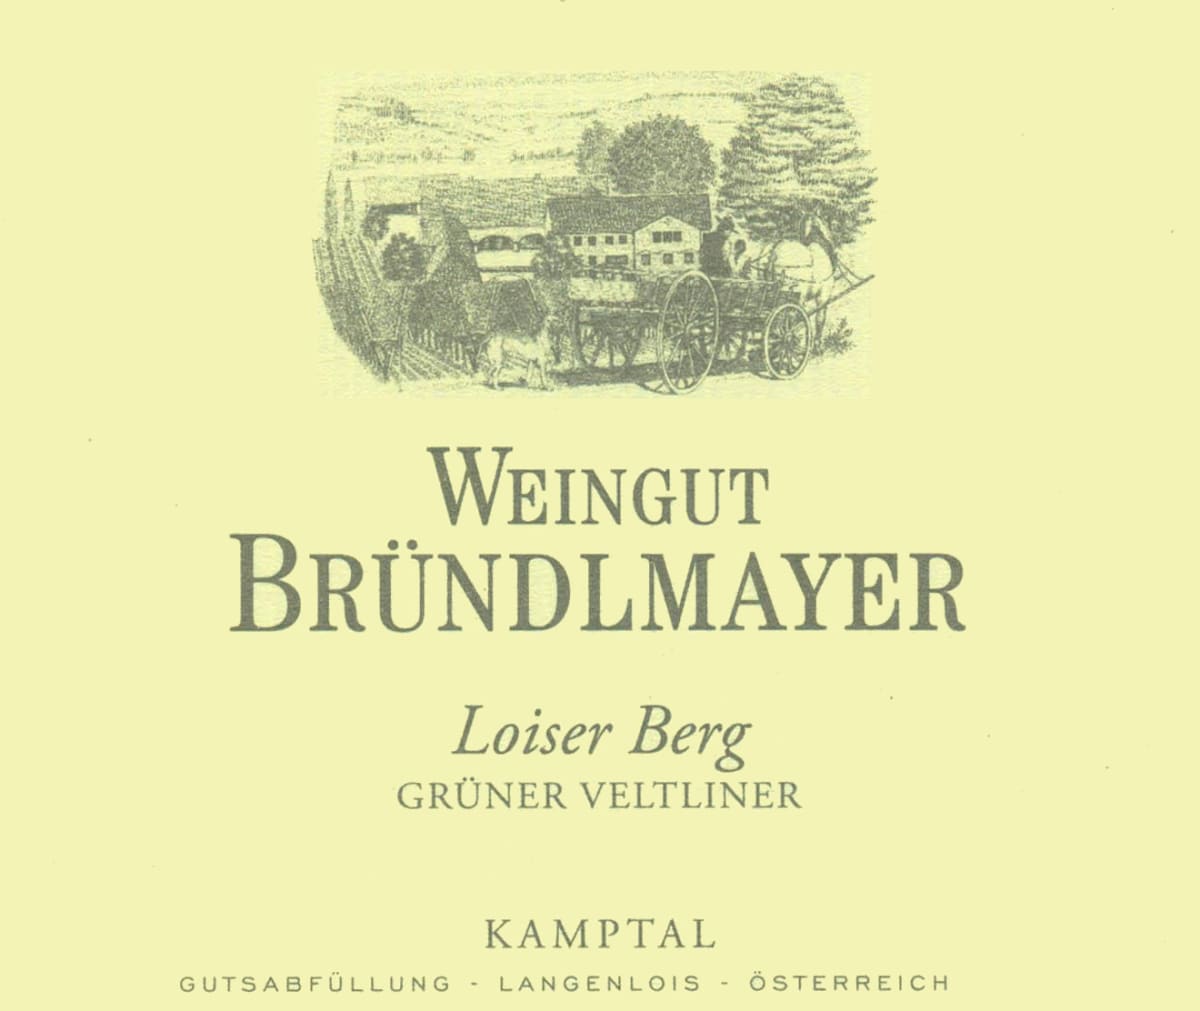 Brundlmayer  Loiser Berg Gruner Veltliner 2010 Front Label